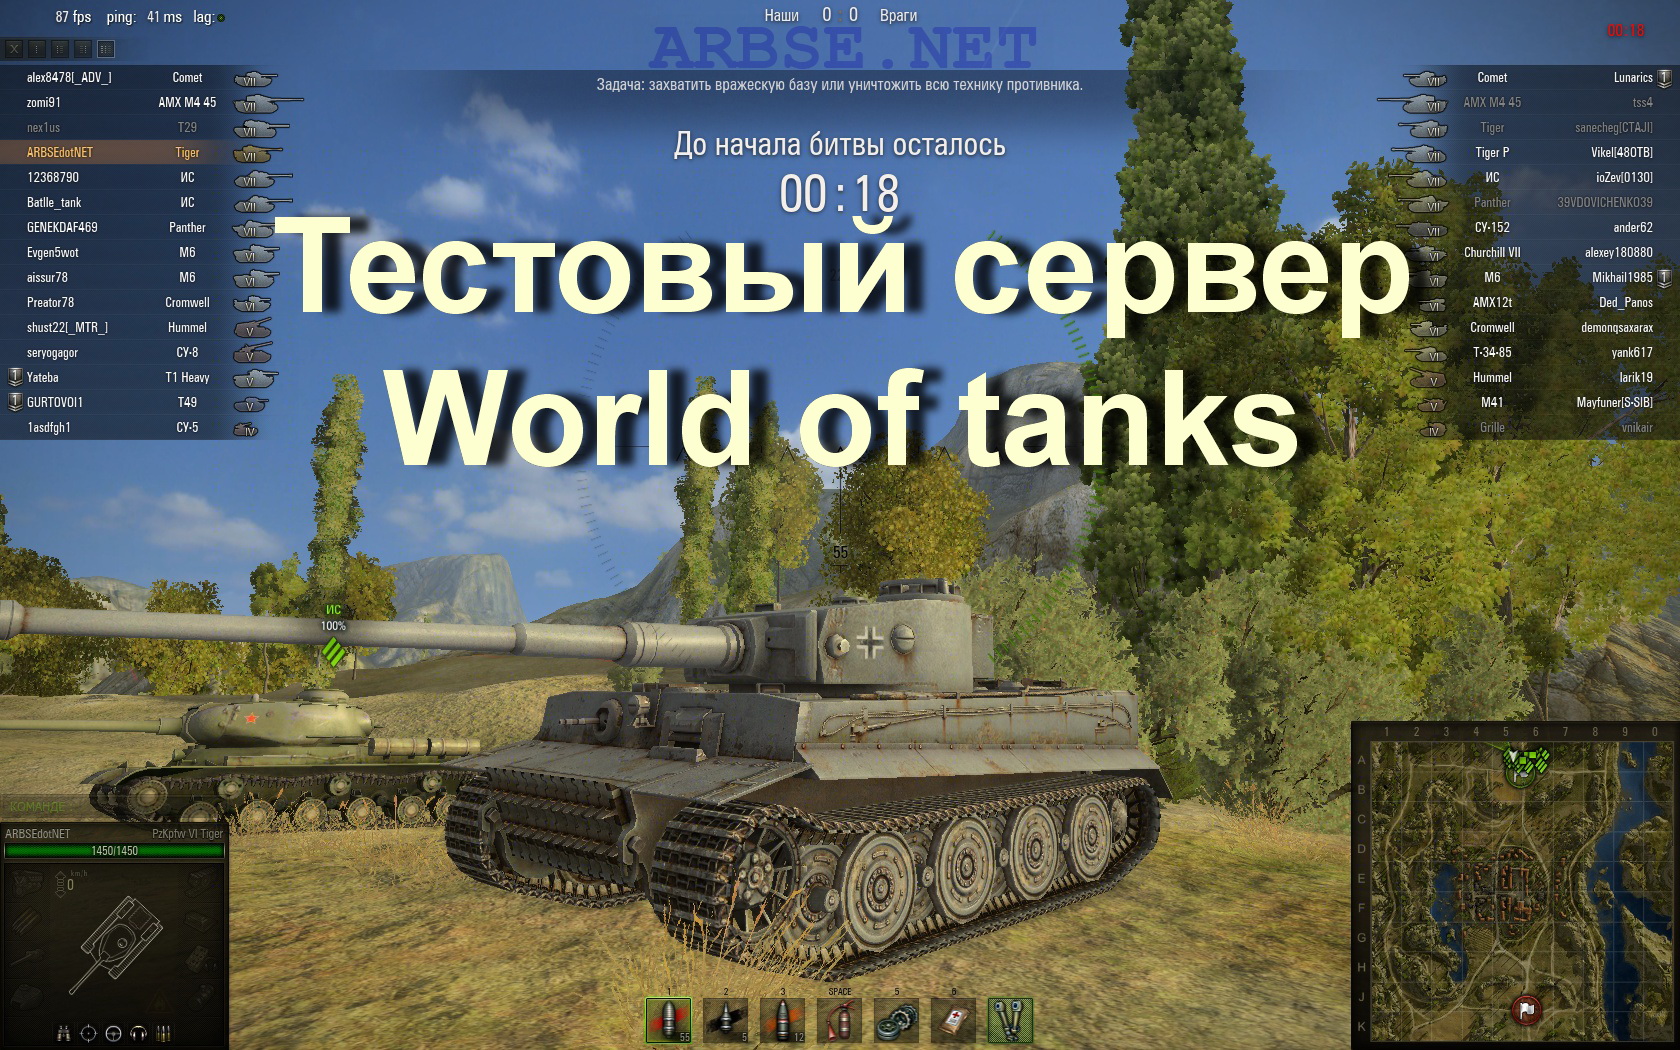 World of tanks тестовый сервер скачать